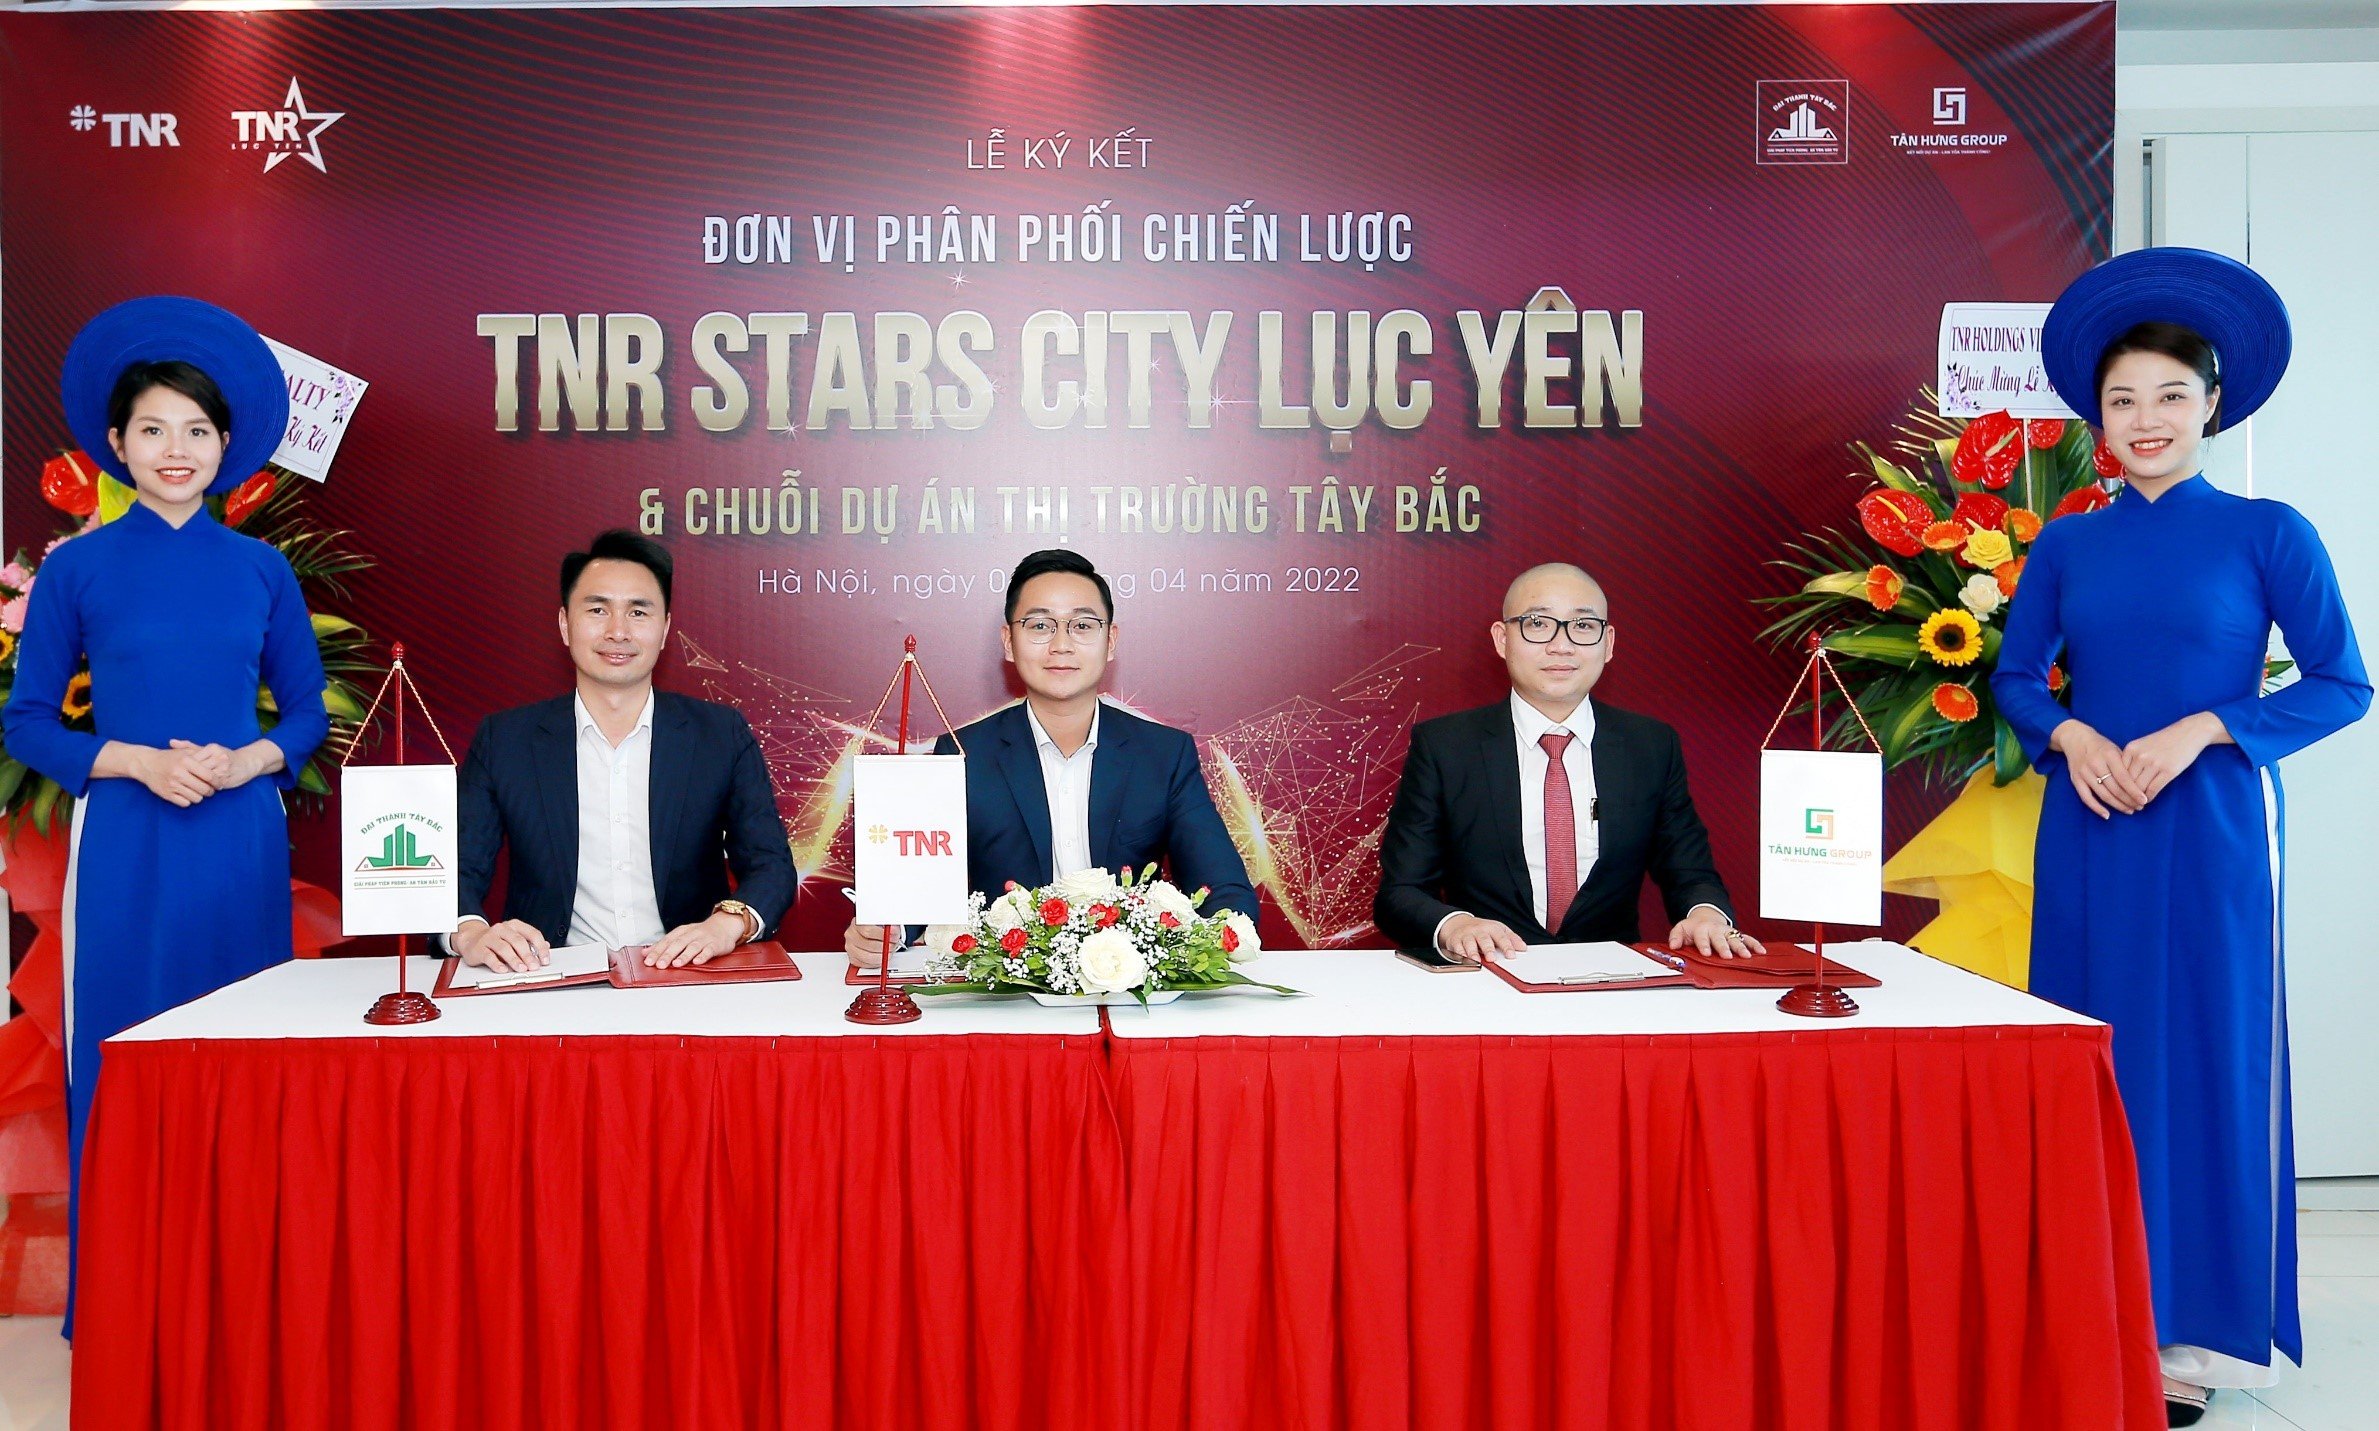 2 đơn vị phân phối chiến lược dự án TNR Stars City Lục Yên